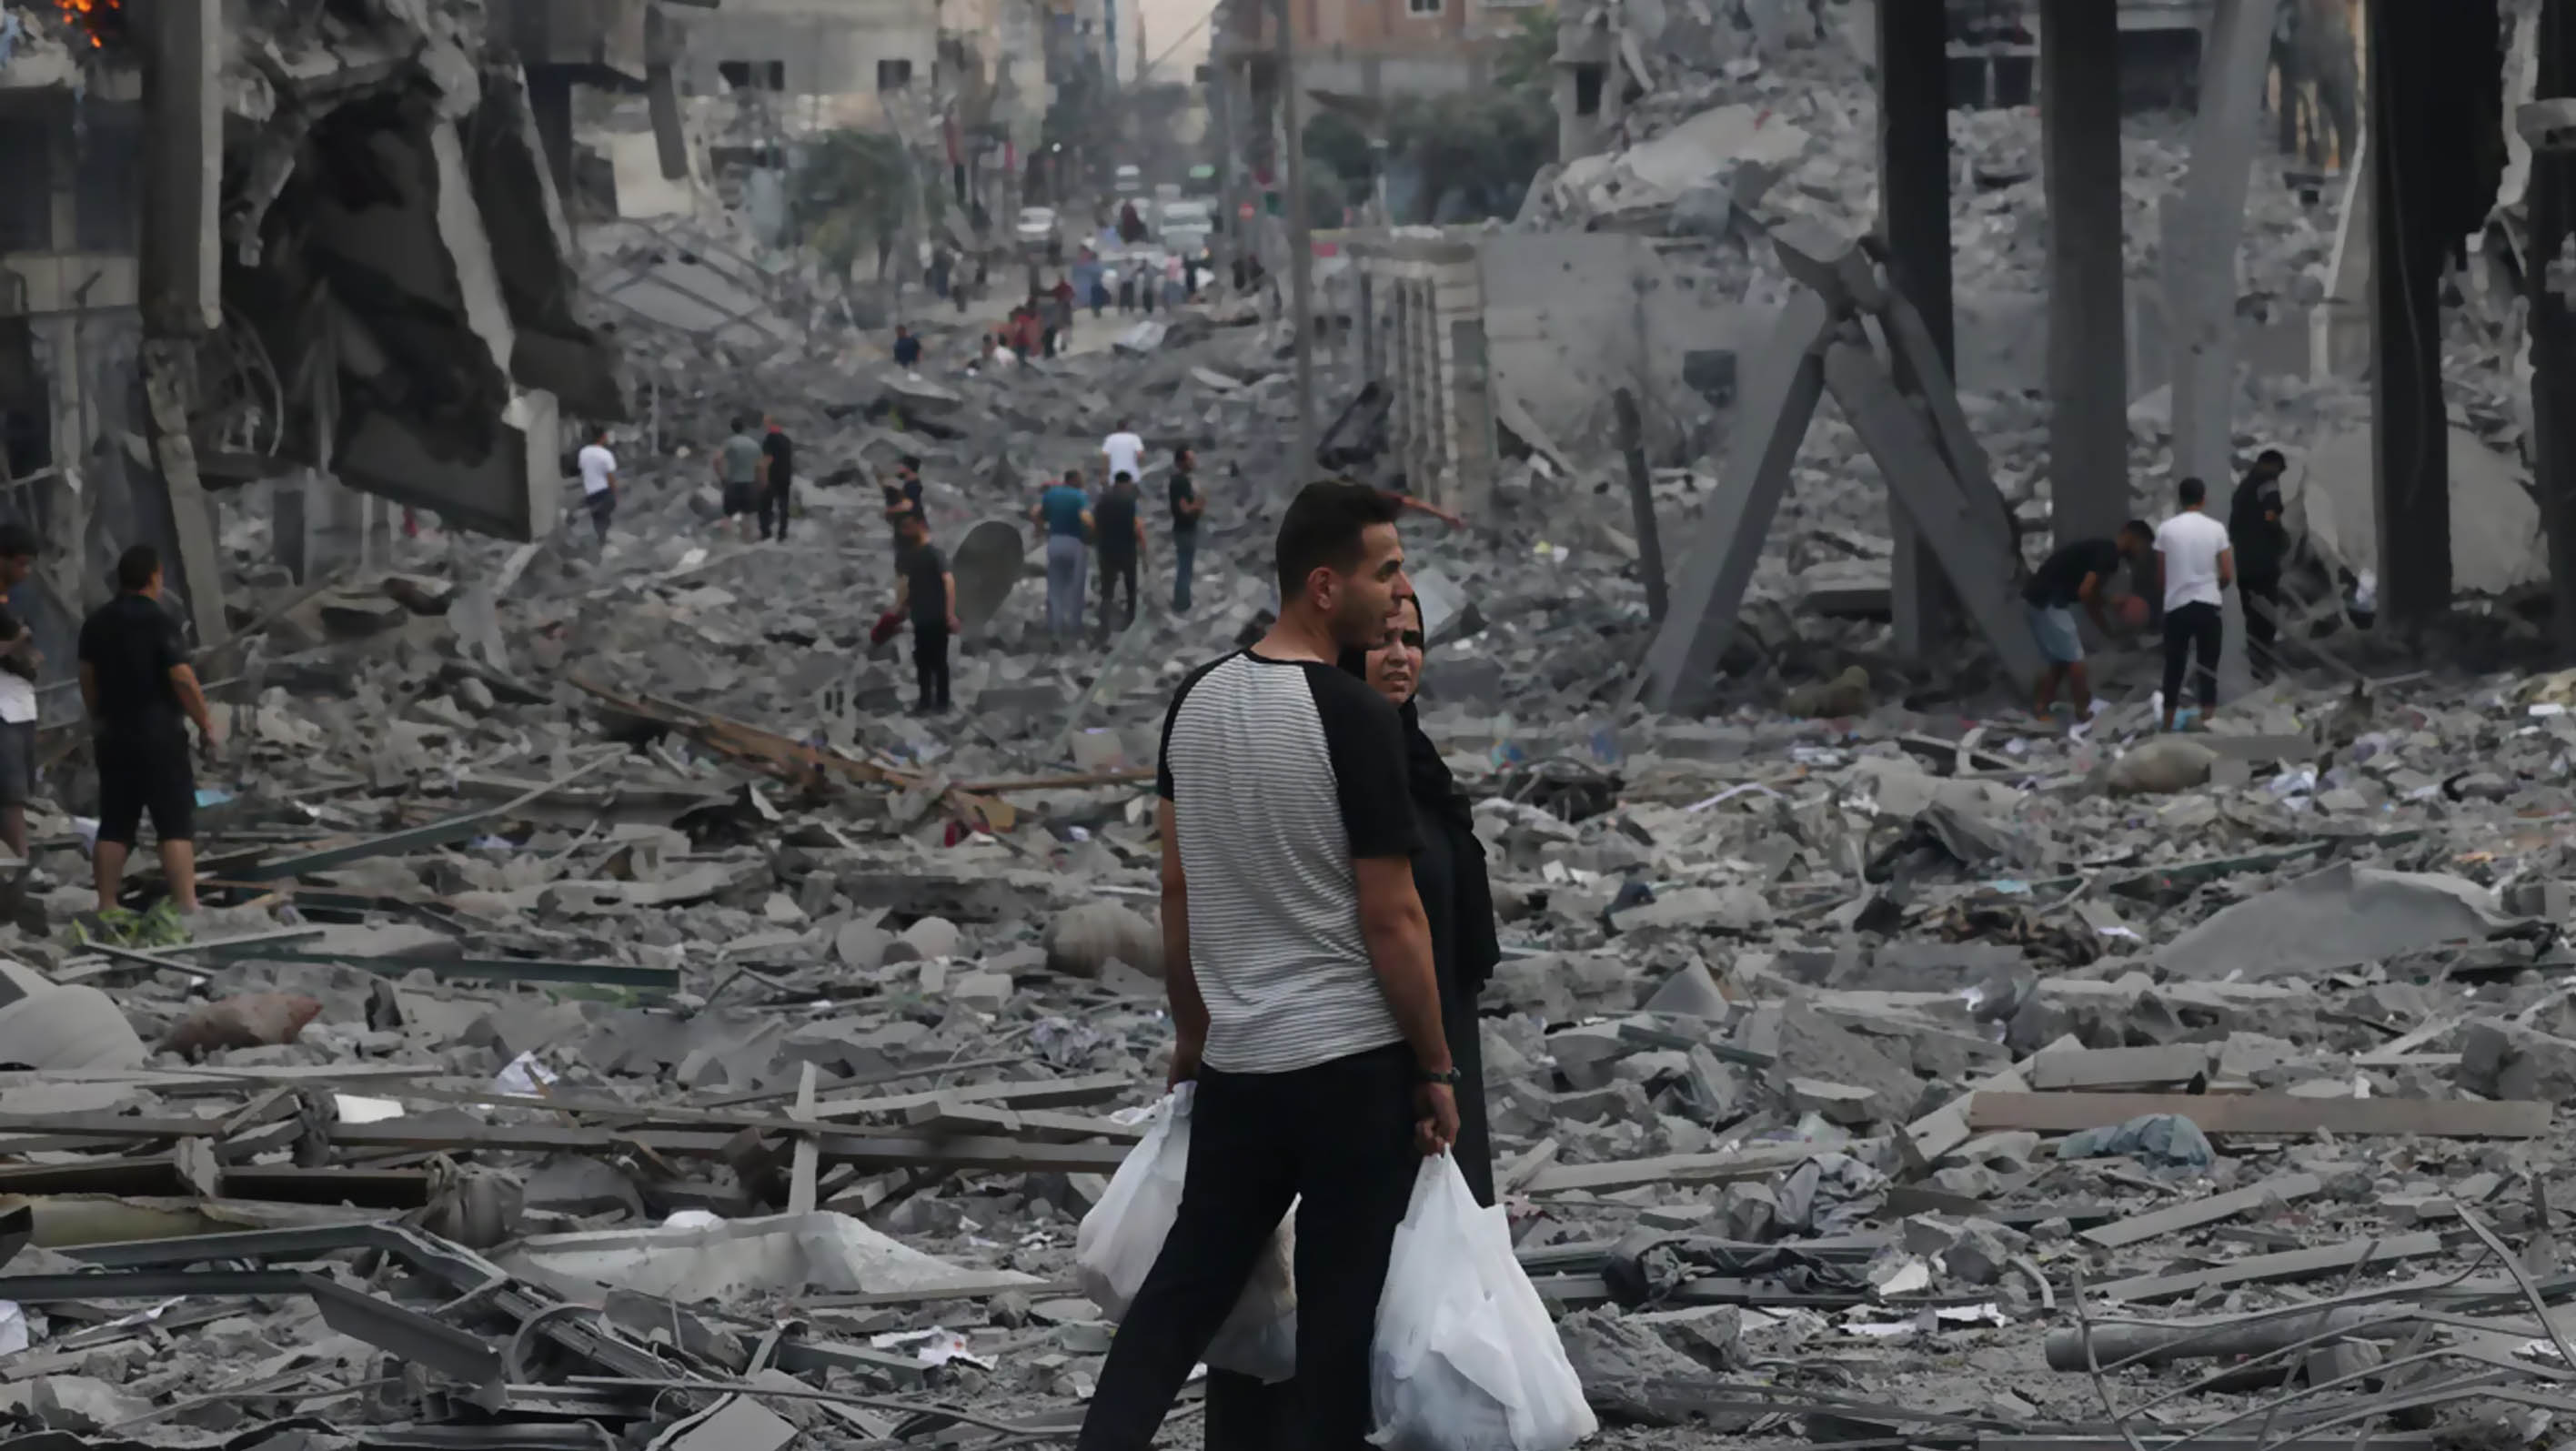 Iran's deceptive agenda in Gaza exposed, says Nobel Laureate Tawakkol Karman